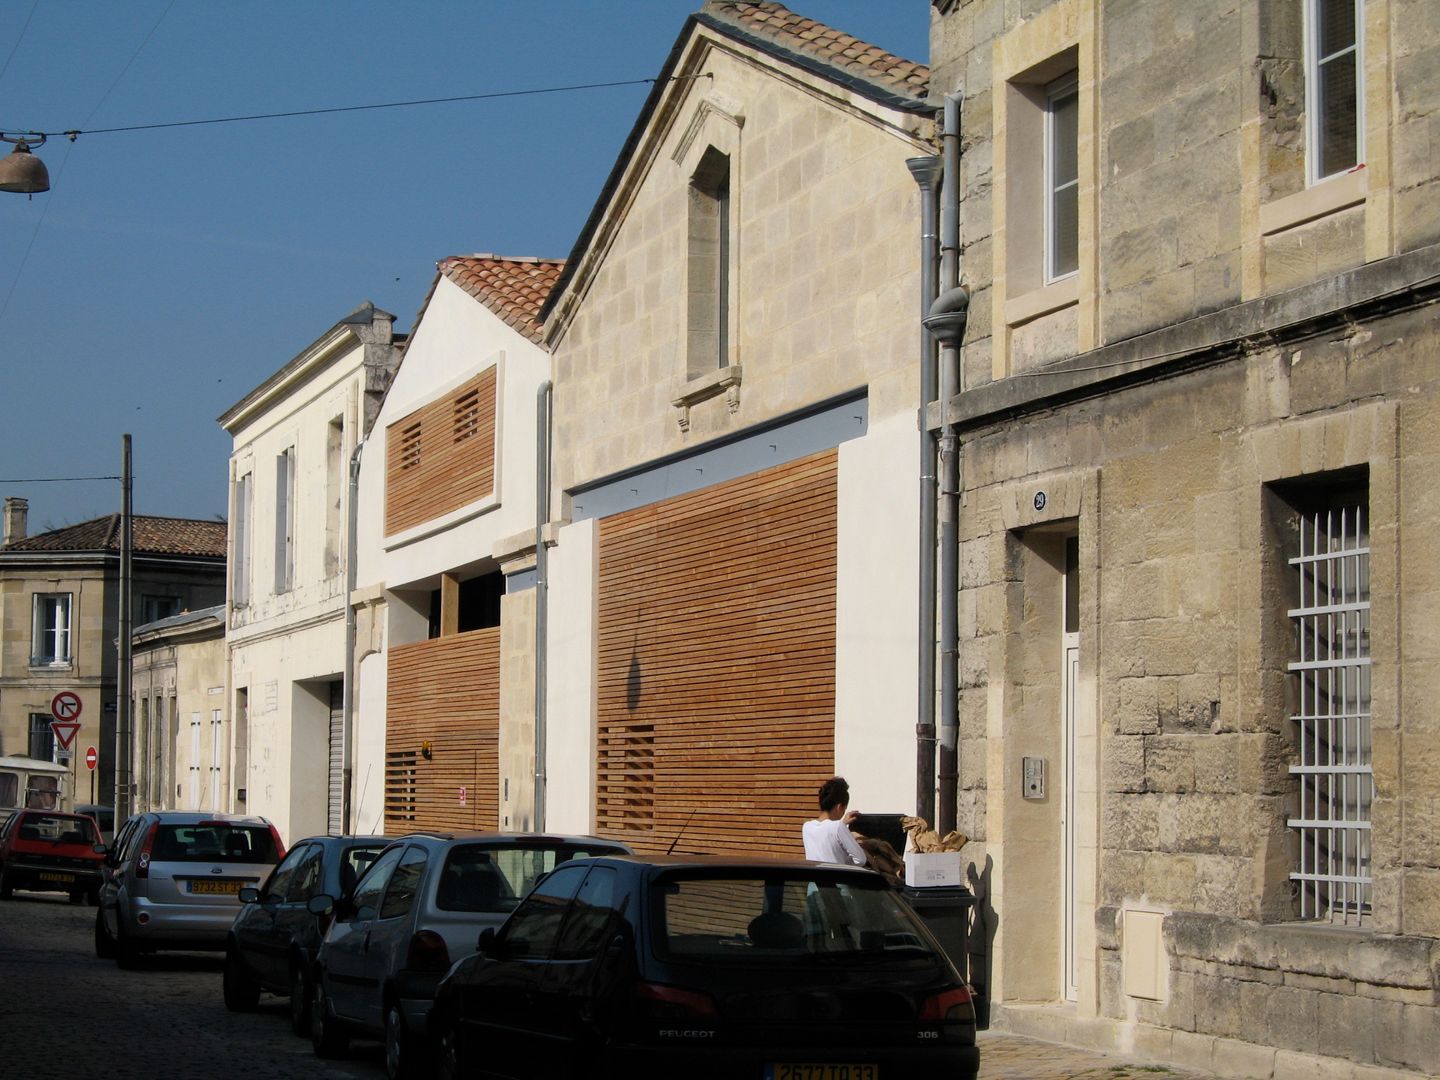 Bordeaux > 4 logements de ville, atelier d'architecture King Kong atelier d'architecture King Kong Casas modernas